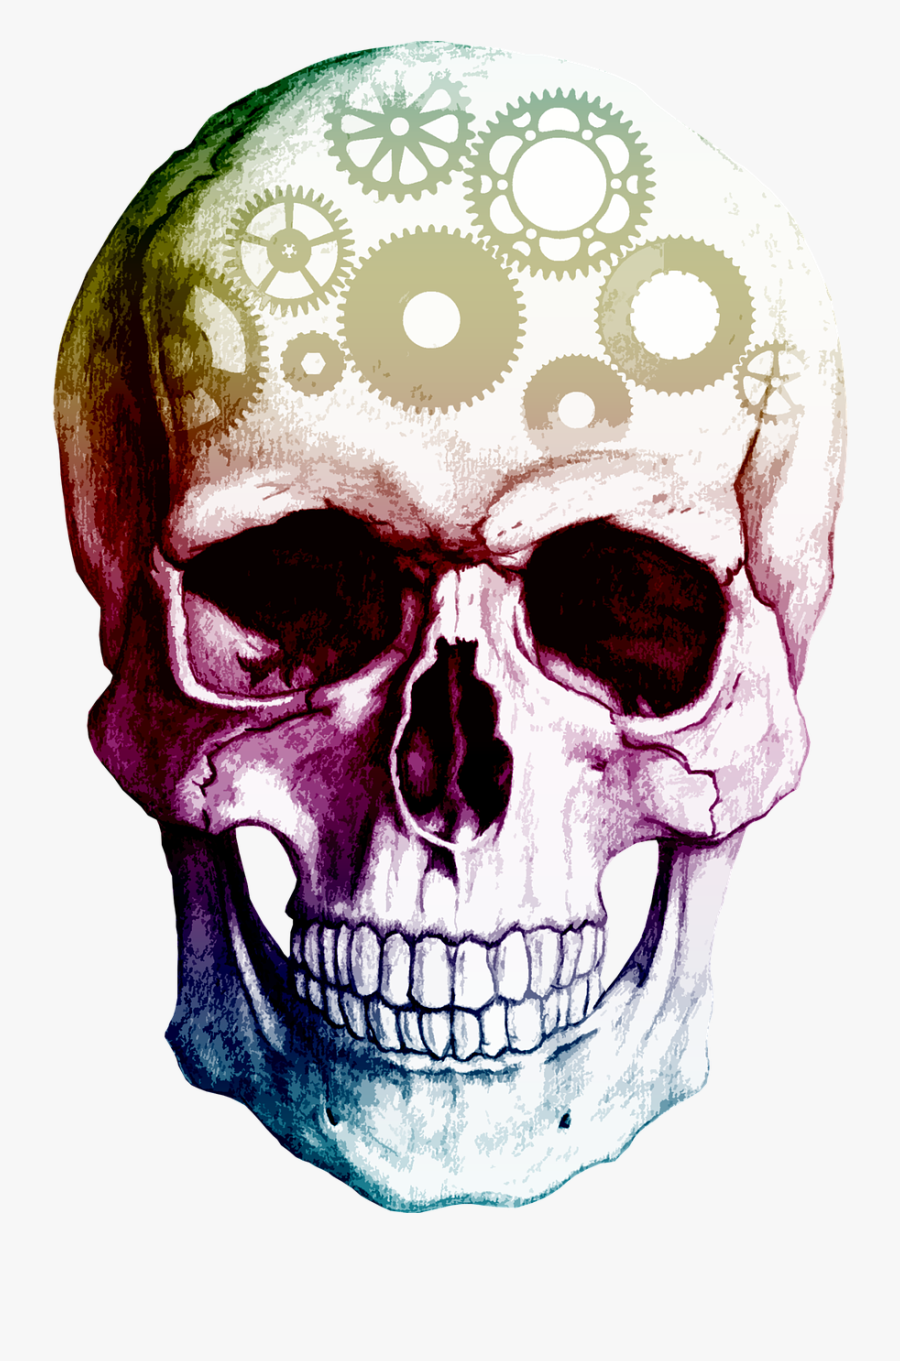 Transparent Background Skull Png, Transparent Clipart